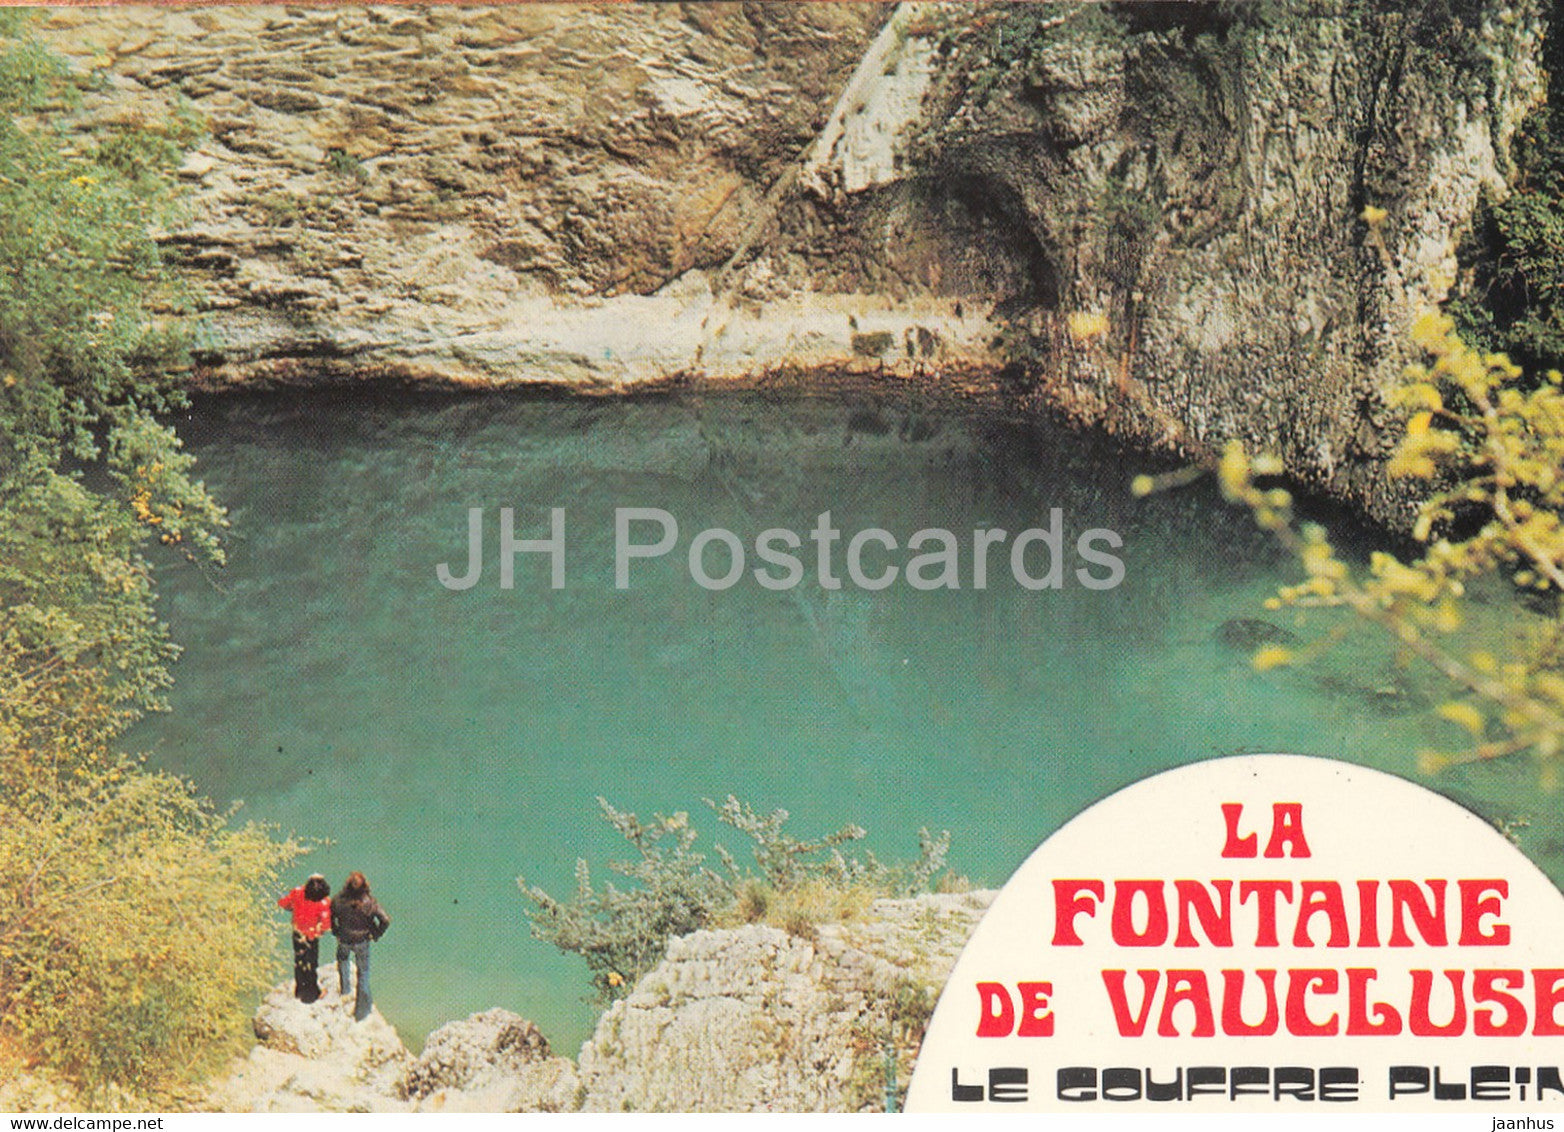 La Fontaine de Vaucluse - Le Gouffre Plein - France - unused - JH Postcards